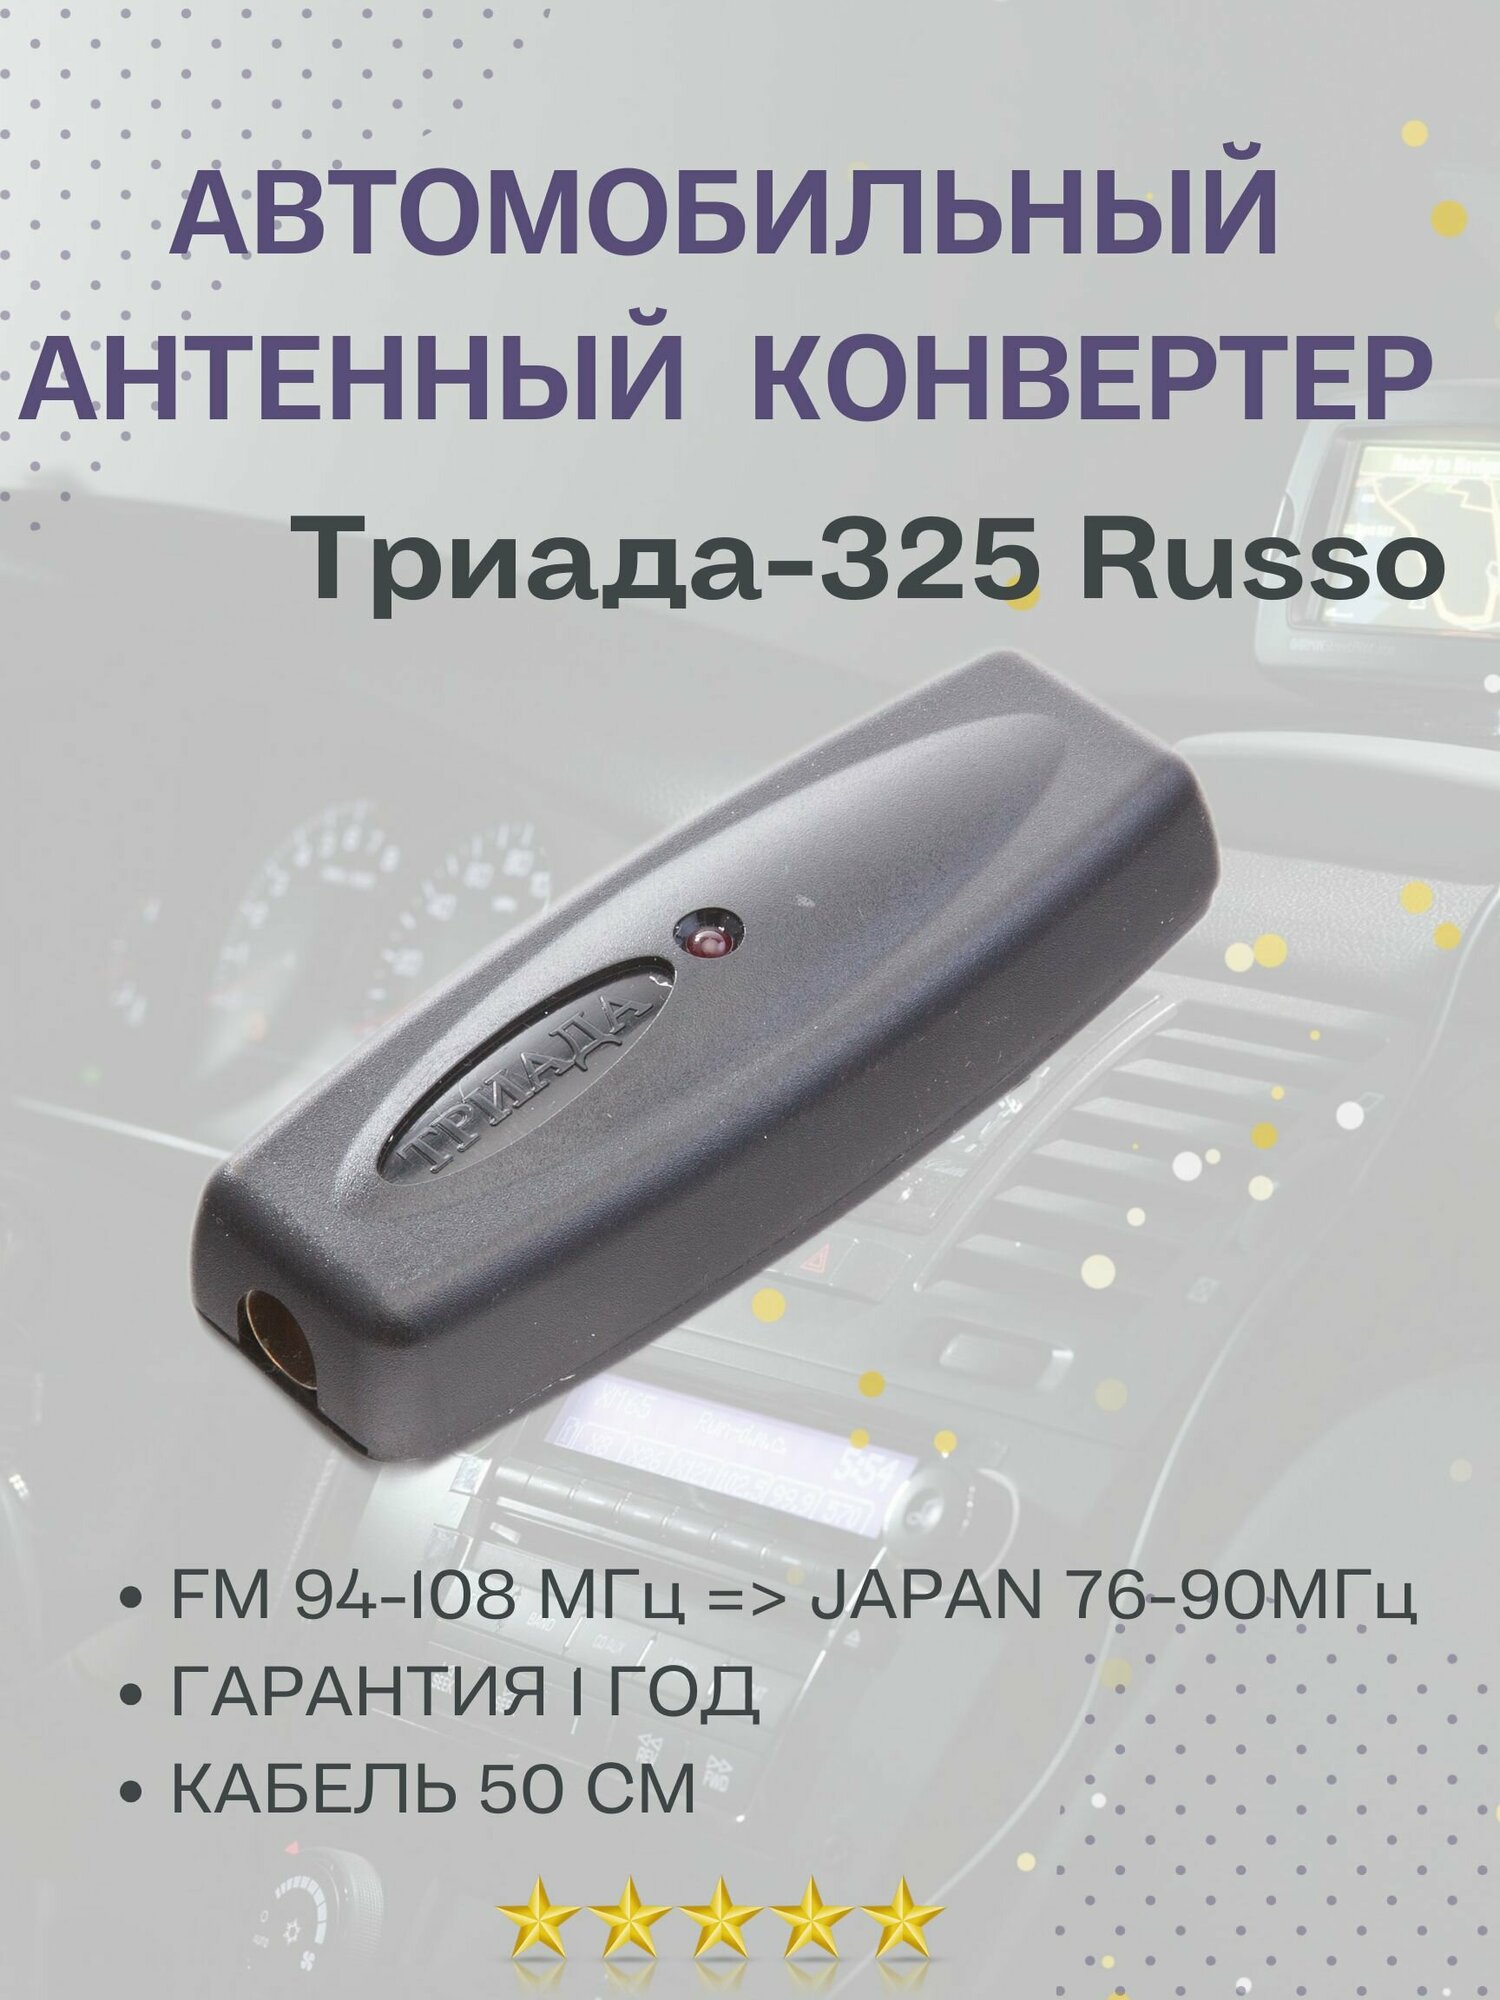 Антенный конвертер Триада-325 Japan - фото №1